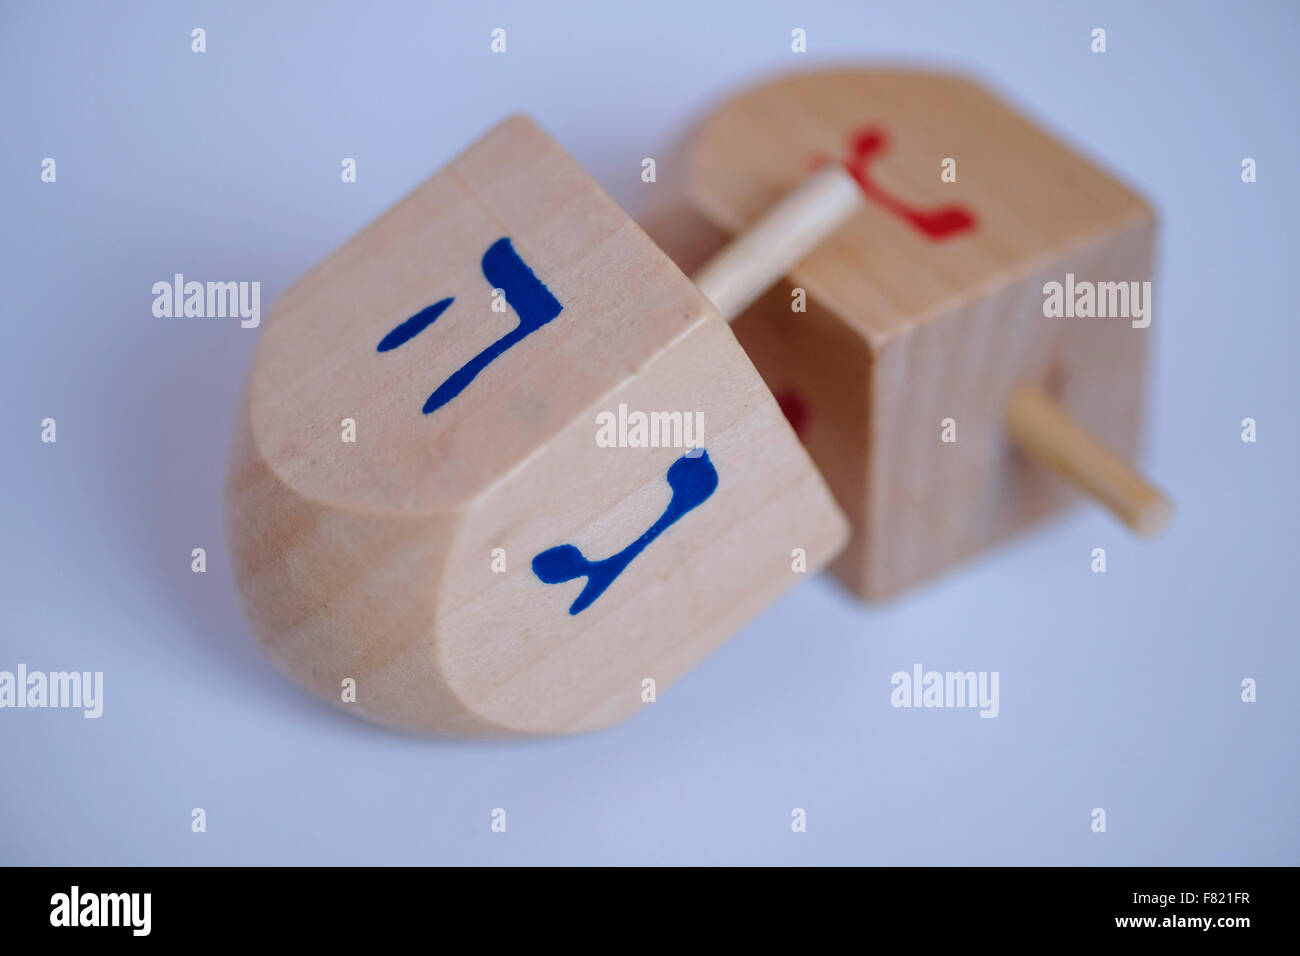 Holz- Dreidel ein traditionelles Spielzeug mit hebräischen Alphabet während der jüdische Feiertag von Chanukka, das Lichterfest gespielt Stockfoto